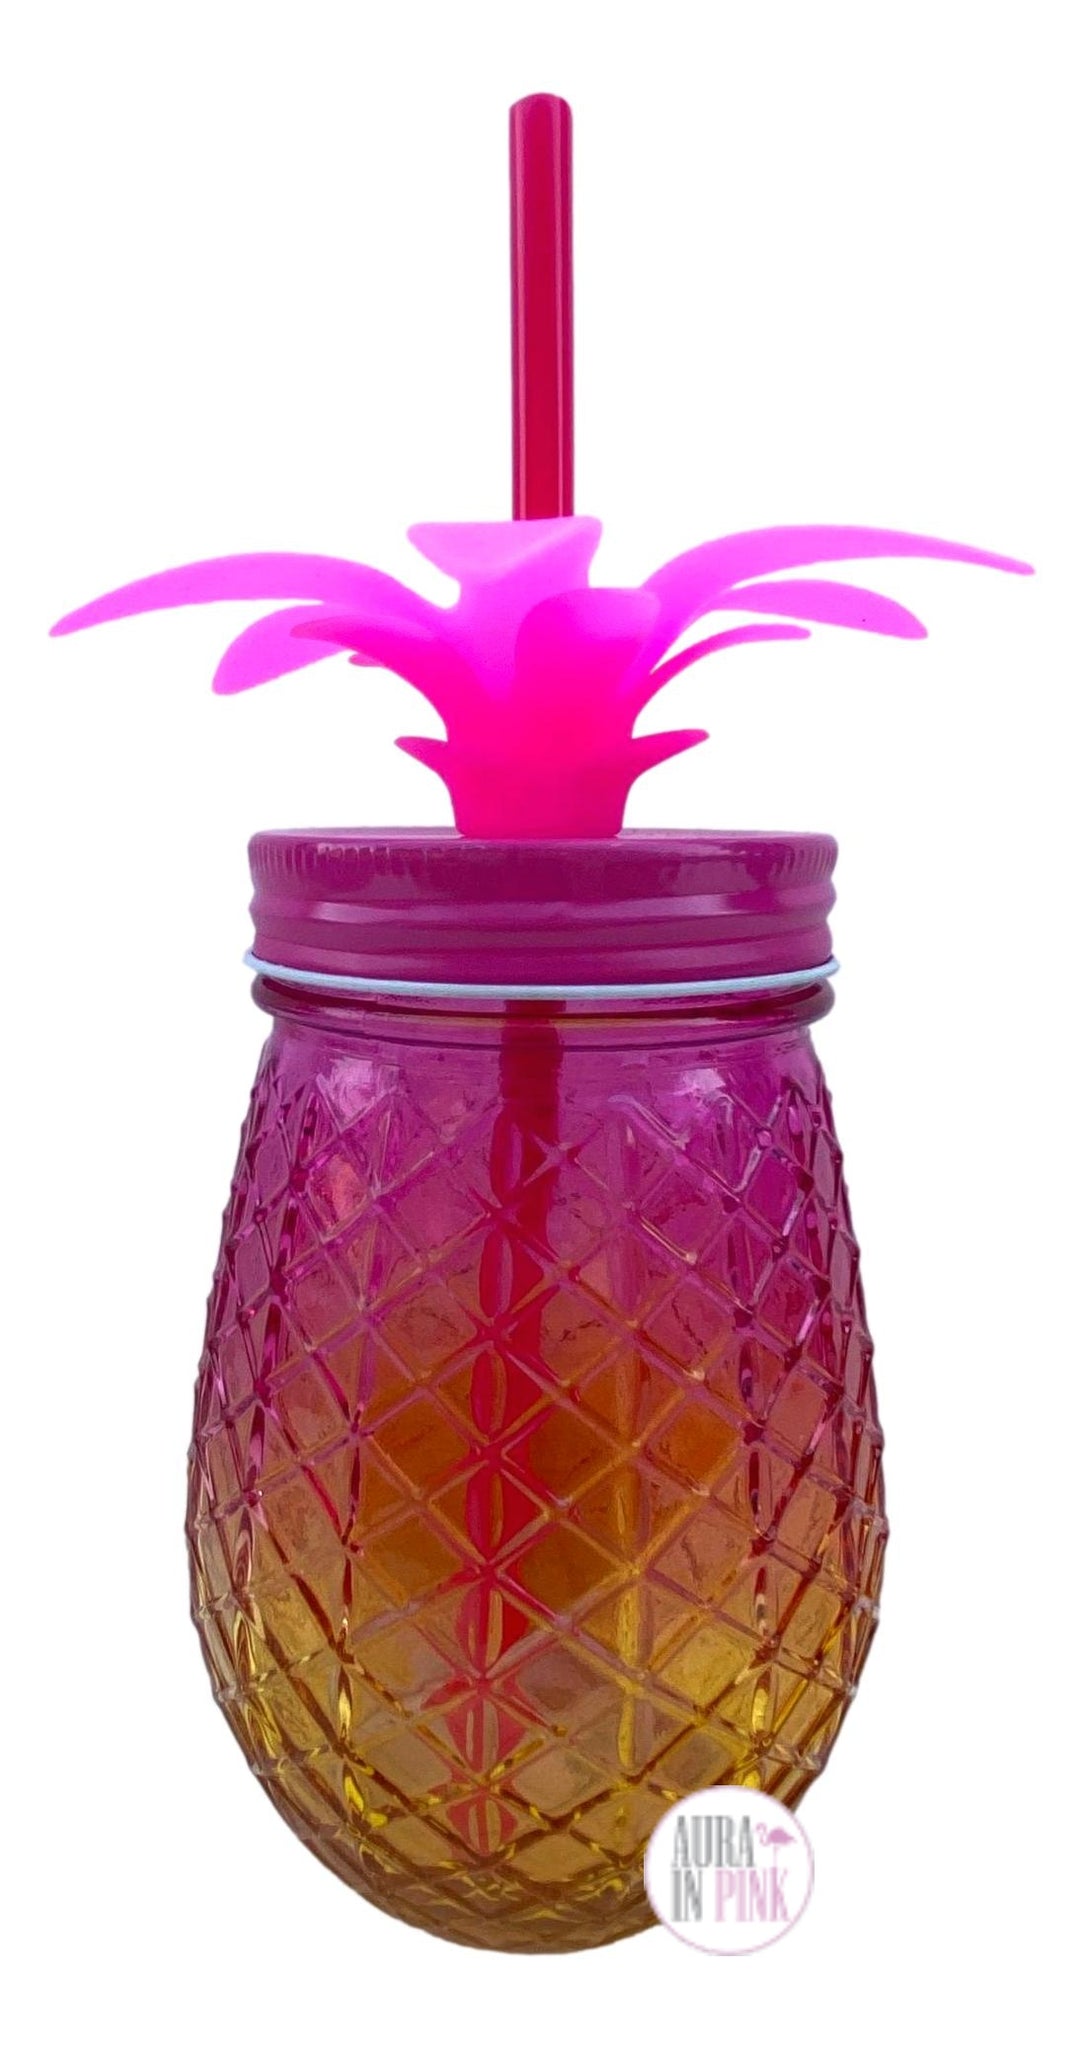 Yellow & Pink Pineapple Shaped Mason Jar Tumbler